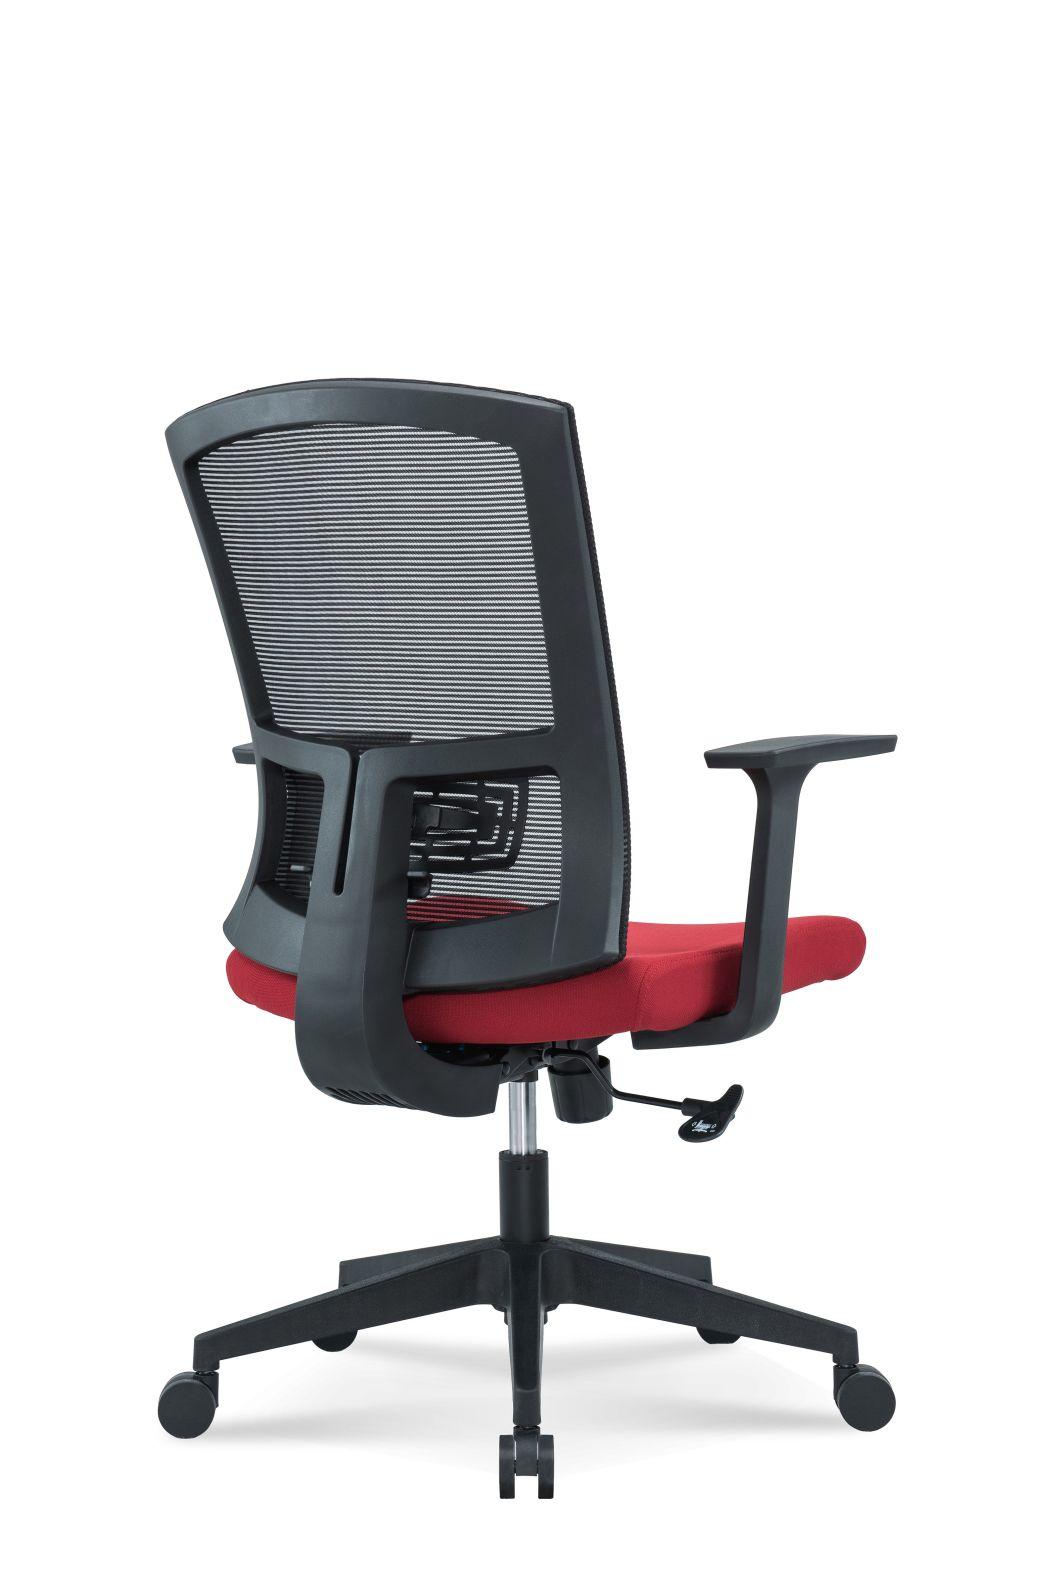 Medium Back Swivel Staff Management Lumbar Support and Headrest Modern Fabric Office Chair